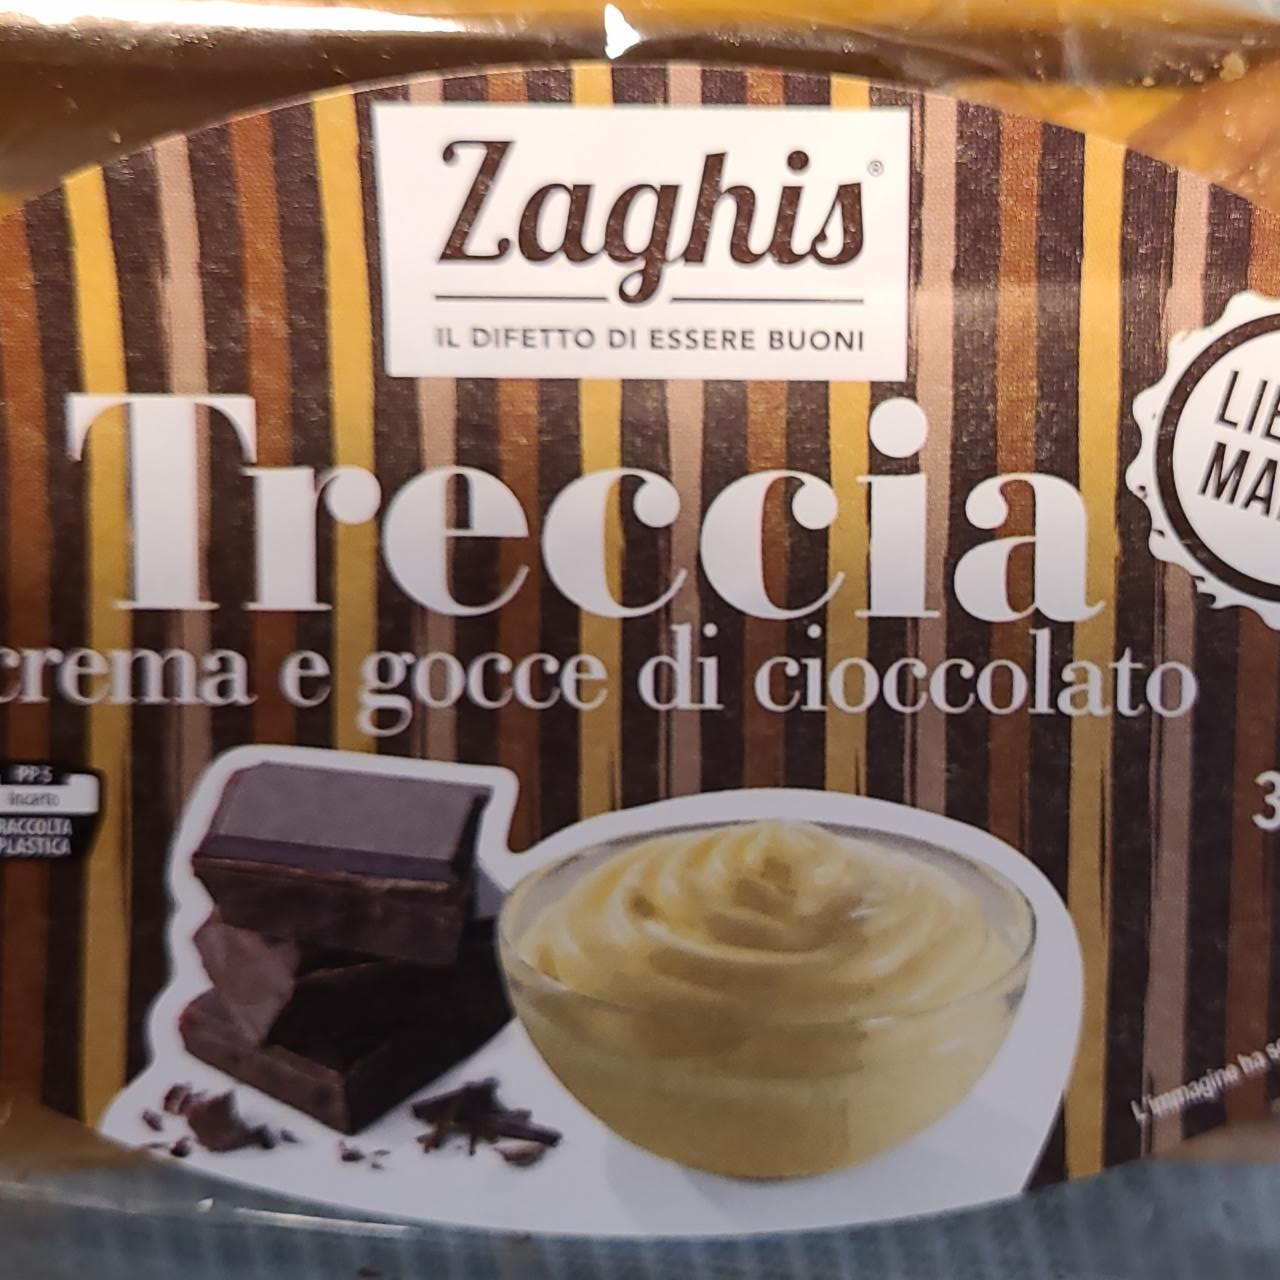 Fotografie - Treccia crema e gocce di cioccolato Zaghis